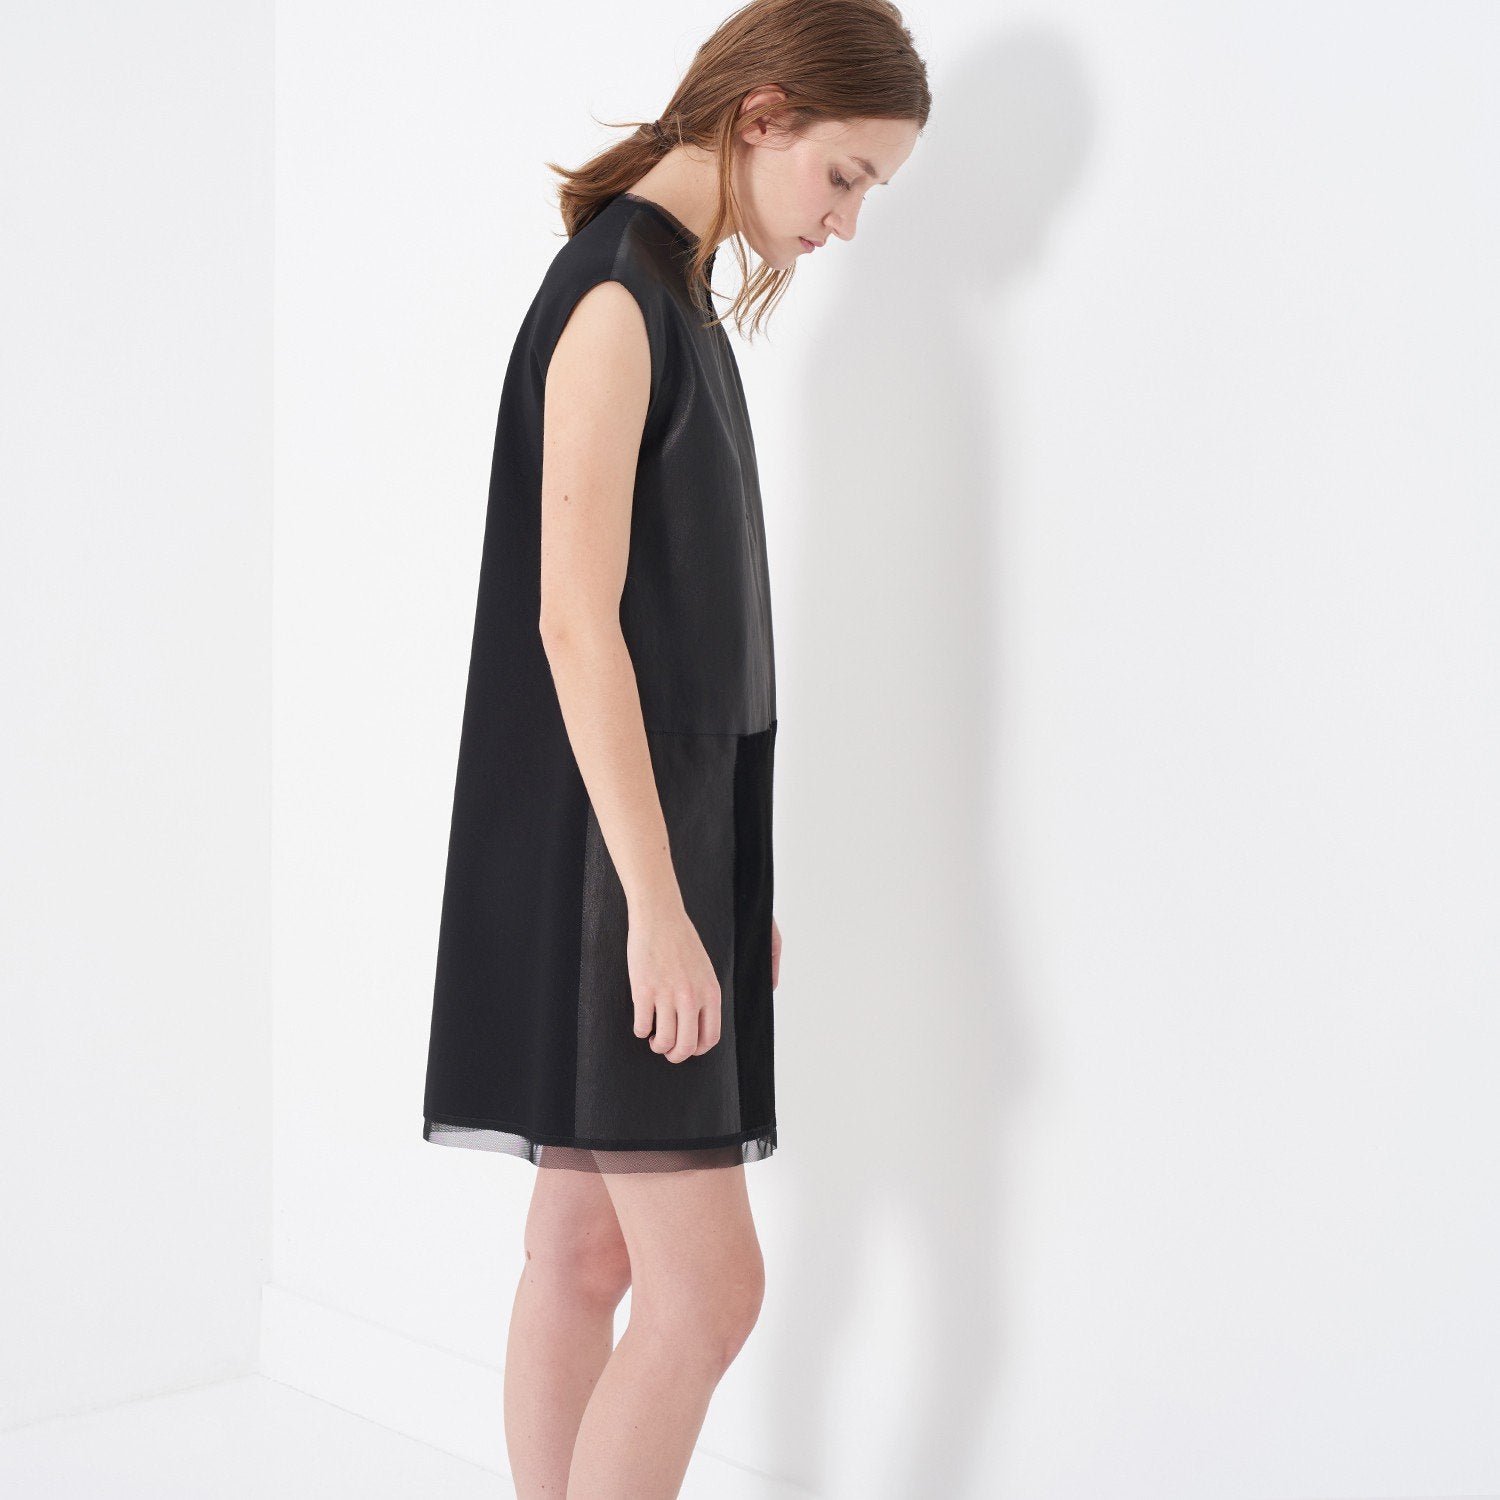 LENOX DRESS - Marie Saint Pierre / [product_color]